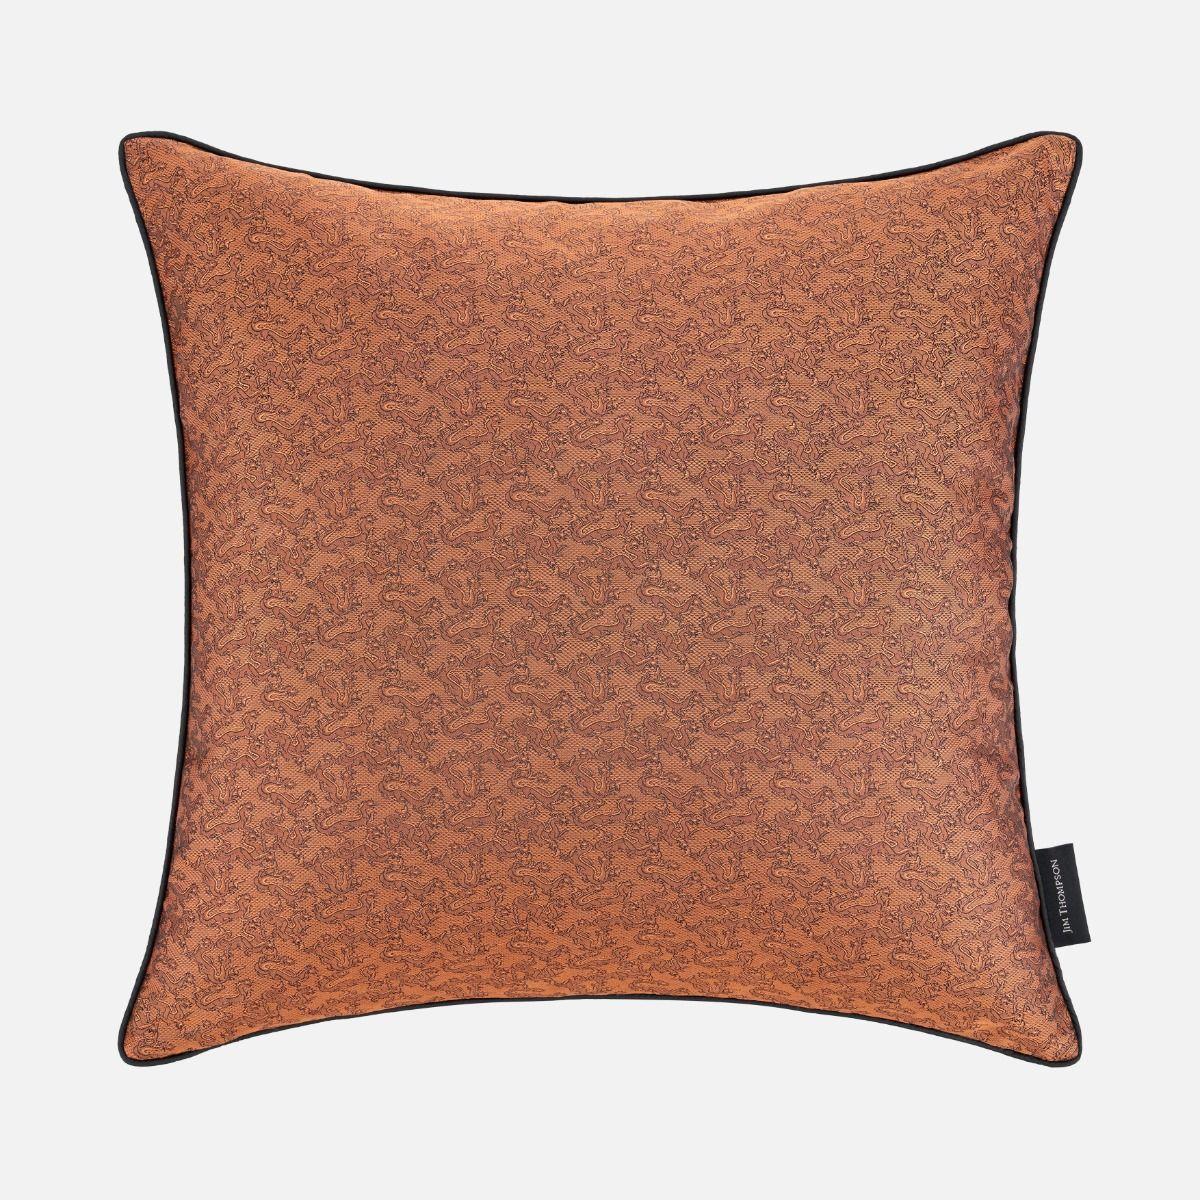 Mystical Dragon Silk Cushion Cover 18" - Brick Brown